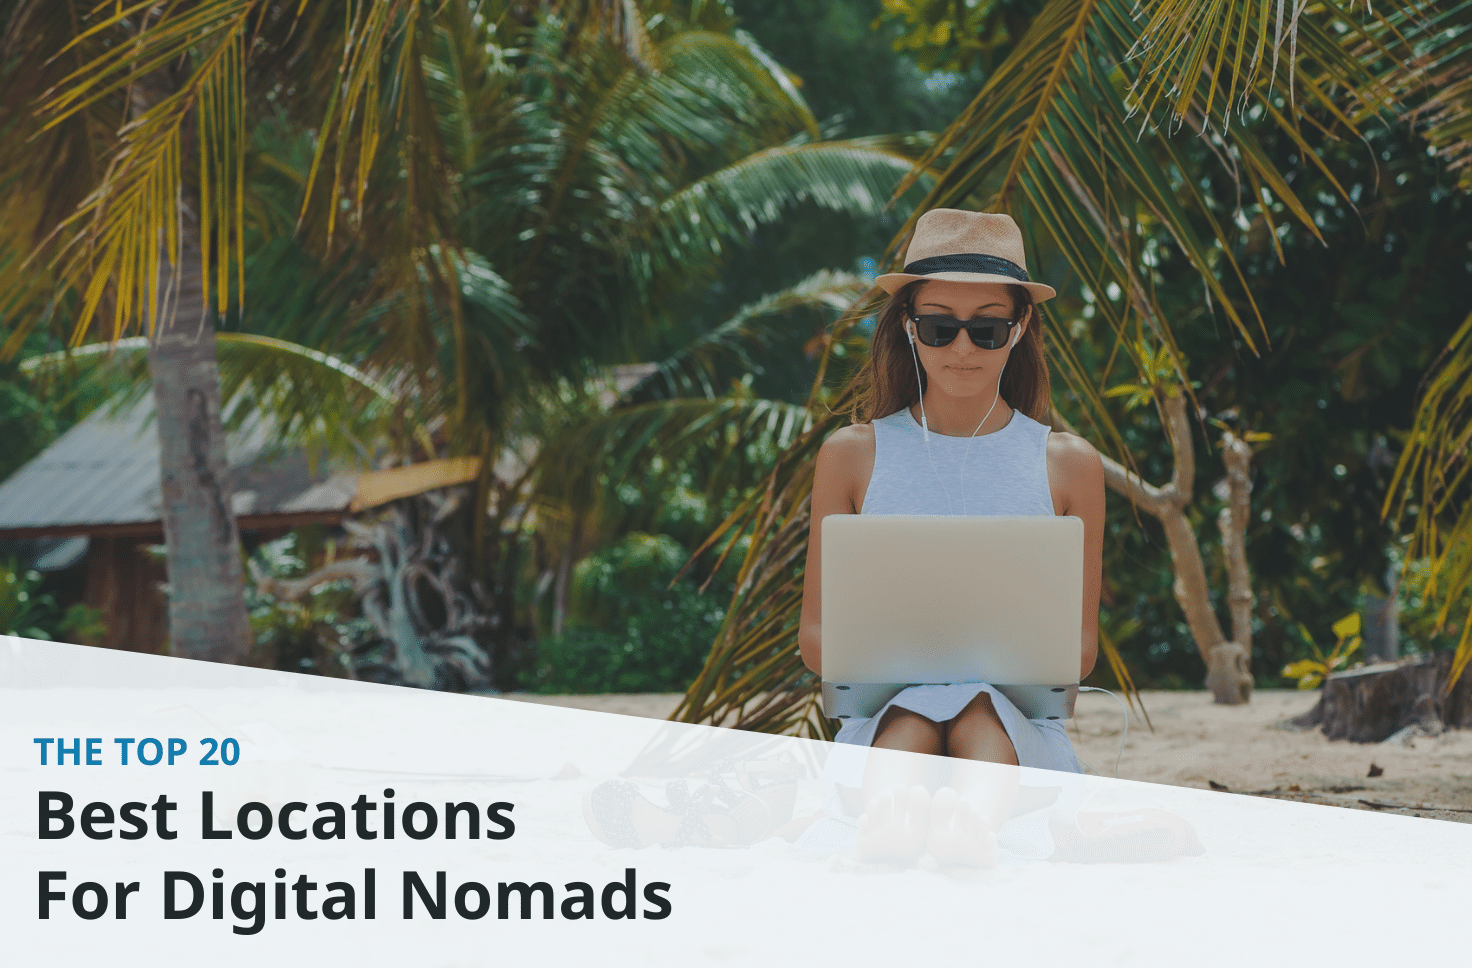 Nomad digital Digital Nomads: